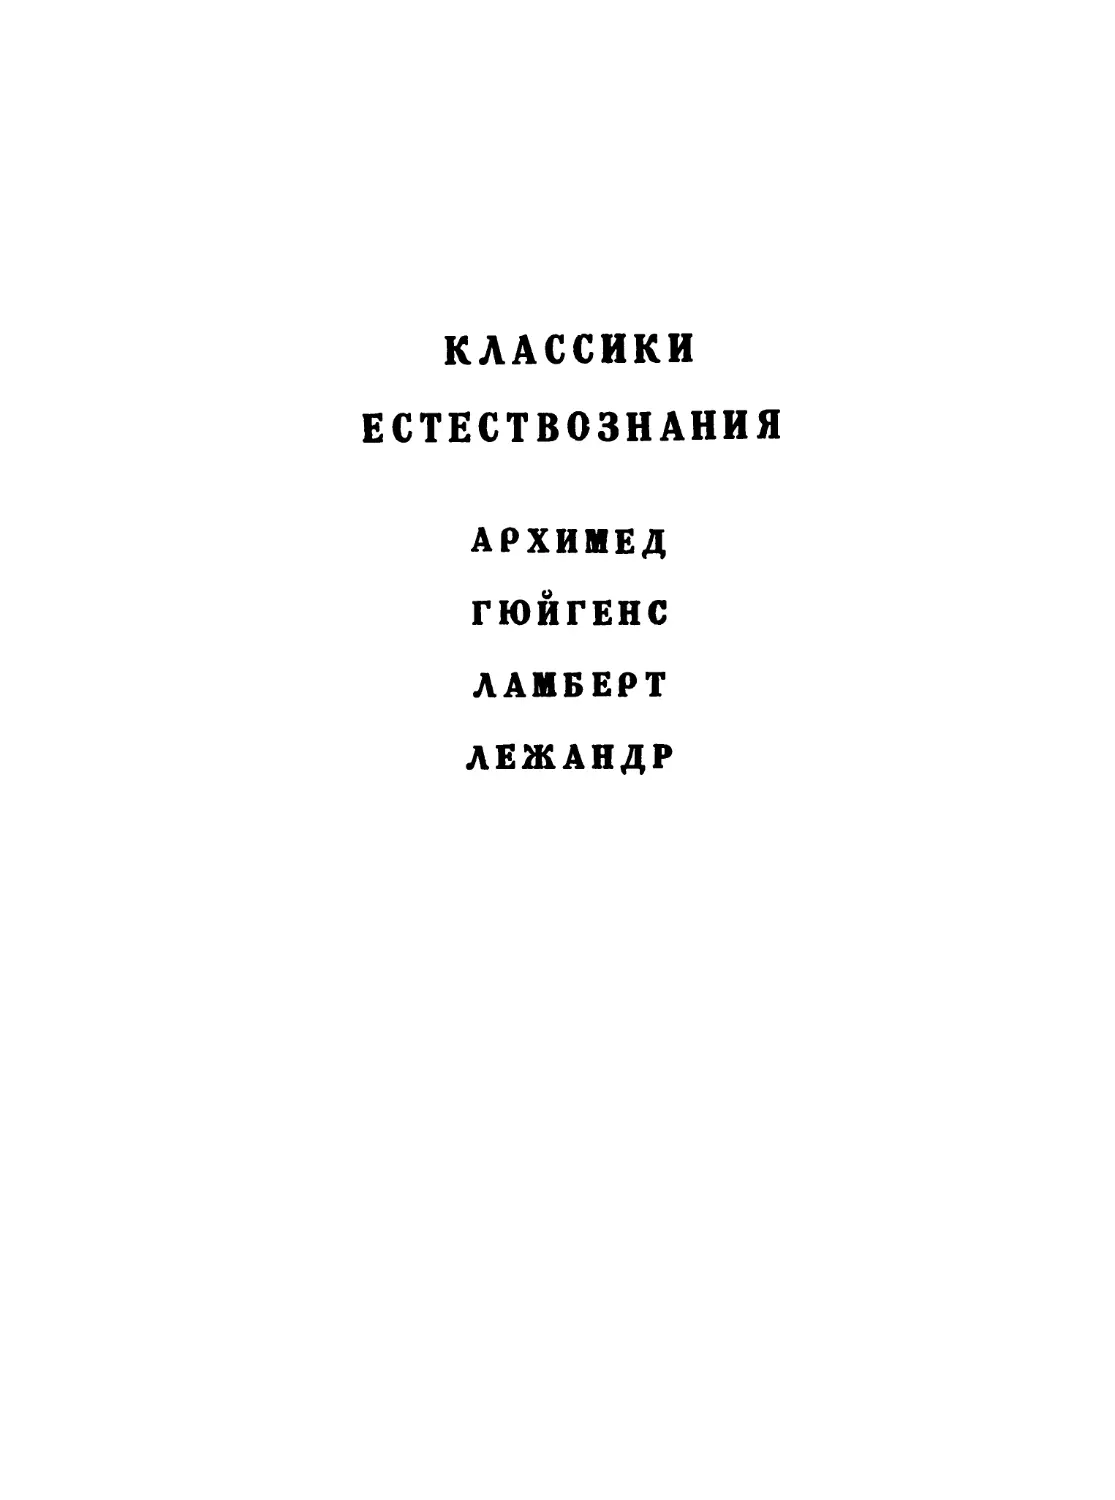 Рудио Ф. О квадратуре круга, 3-е изд. - 1936